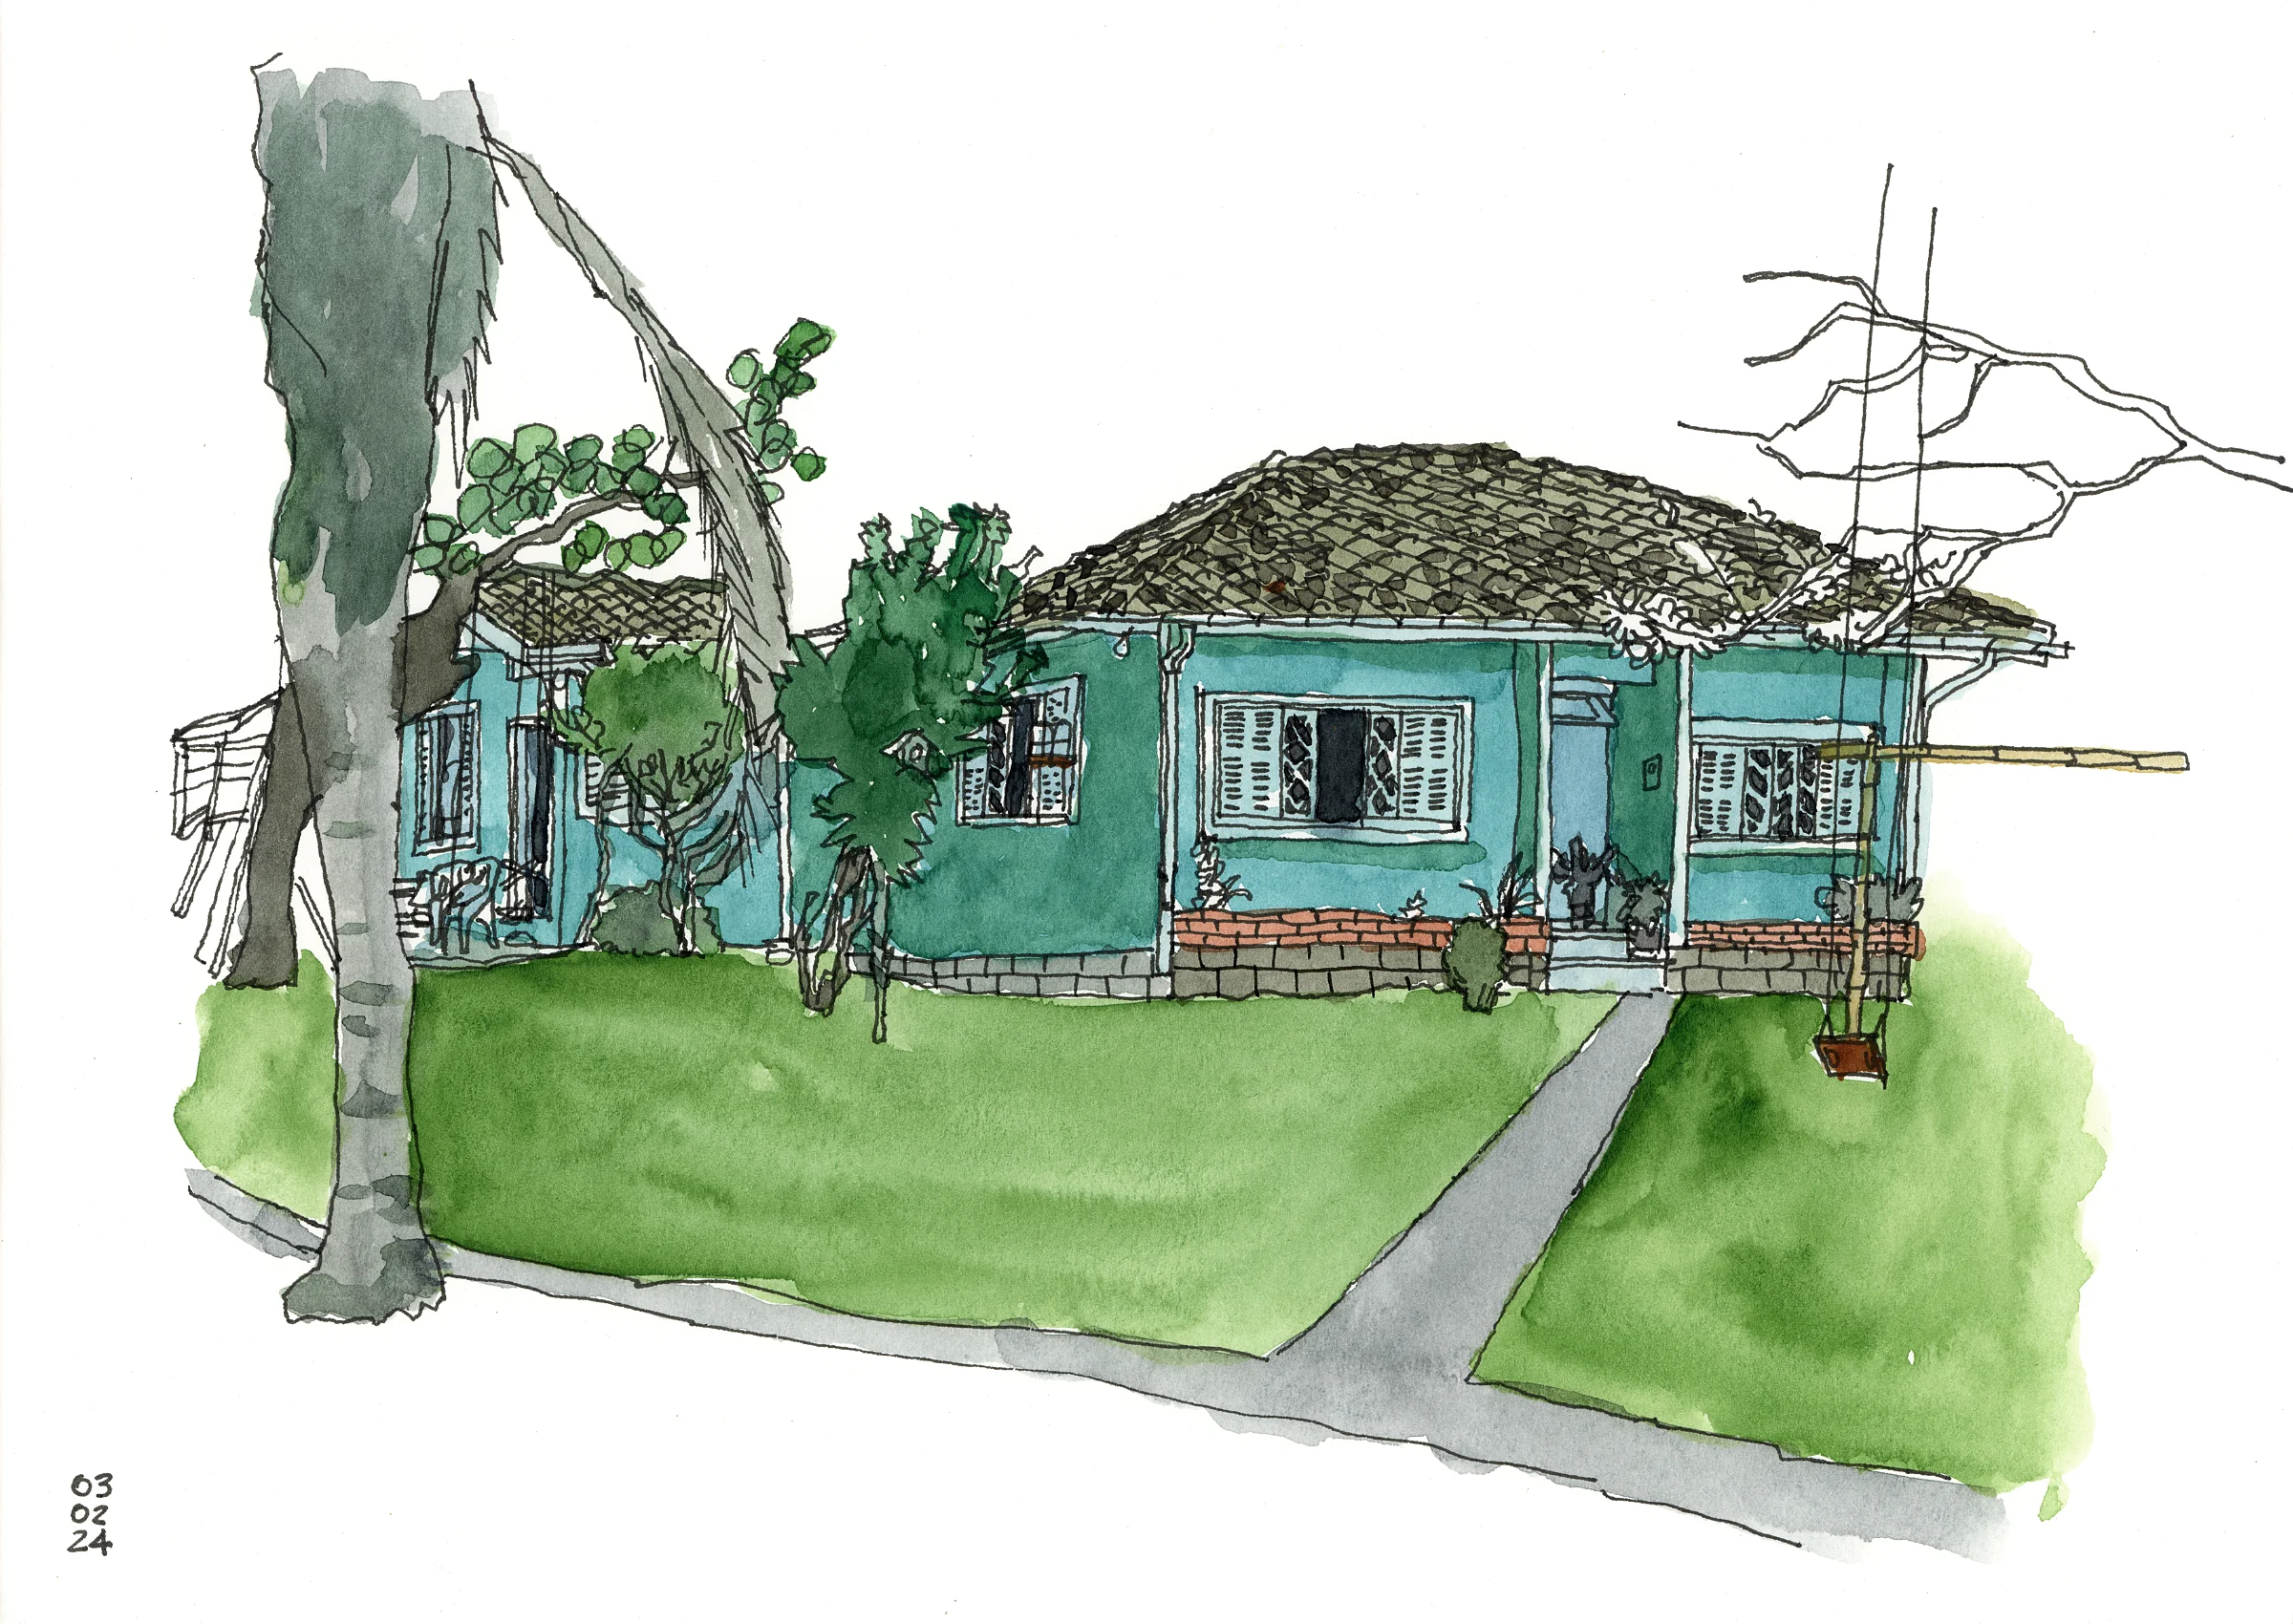 Desenho mostrando uma casa comum, térrea, com duas janelas na fachada, com gramado em frente e árvores ao redor. Desenho a traço colorido com aquarela